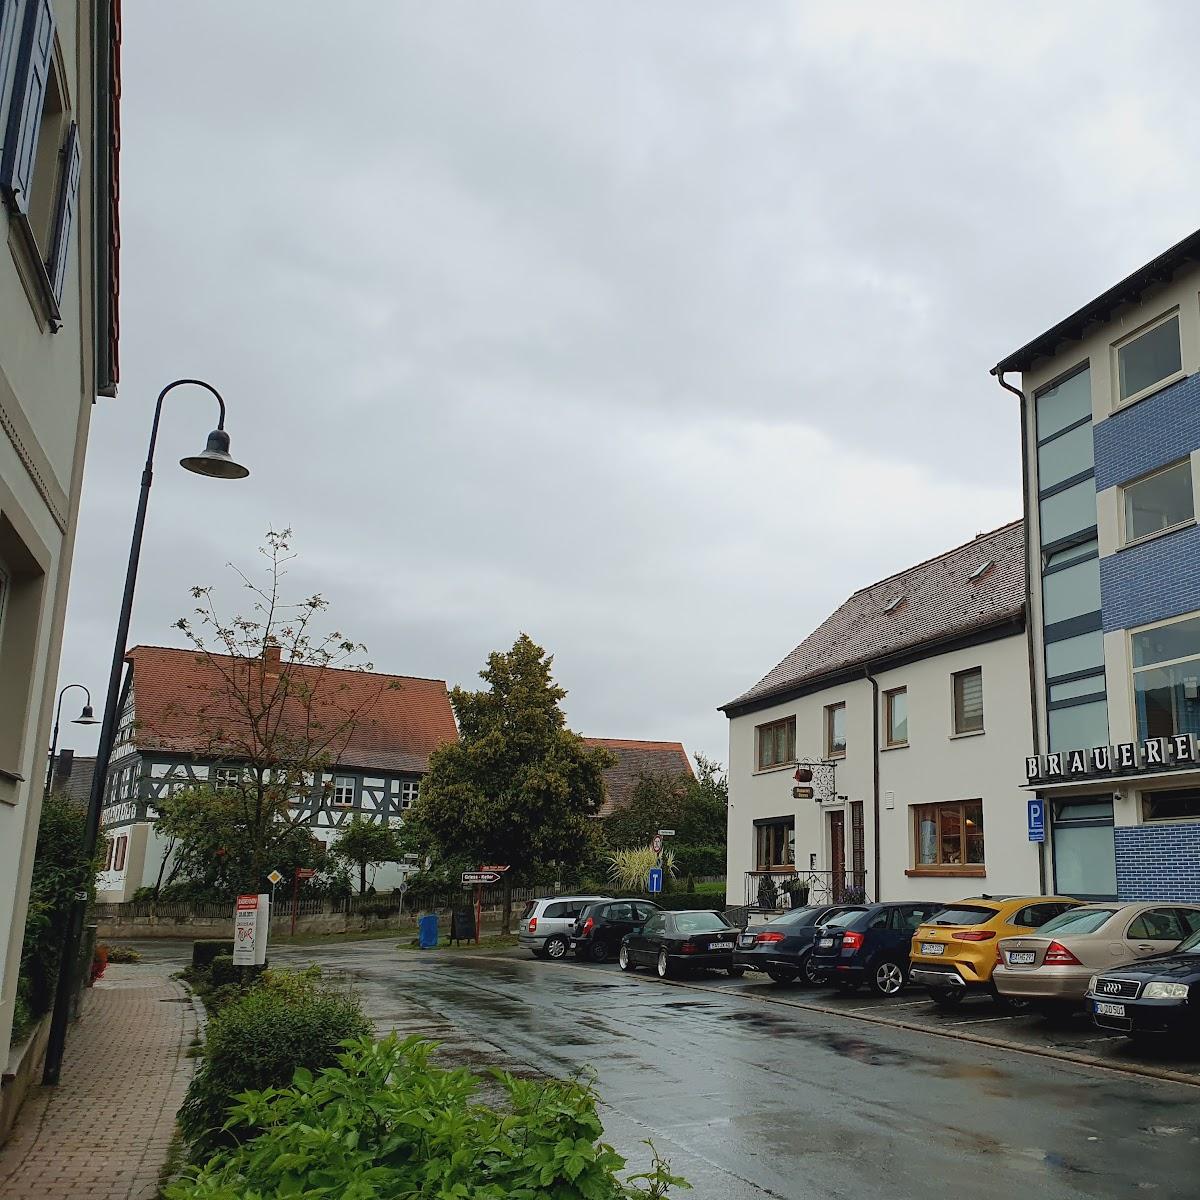 Restaurant "Brauerei Griess" in Strullendorf